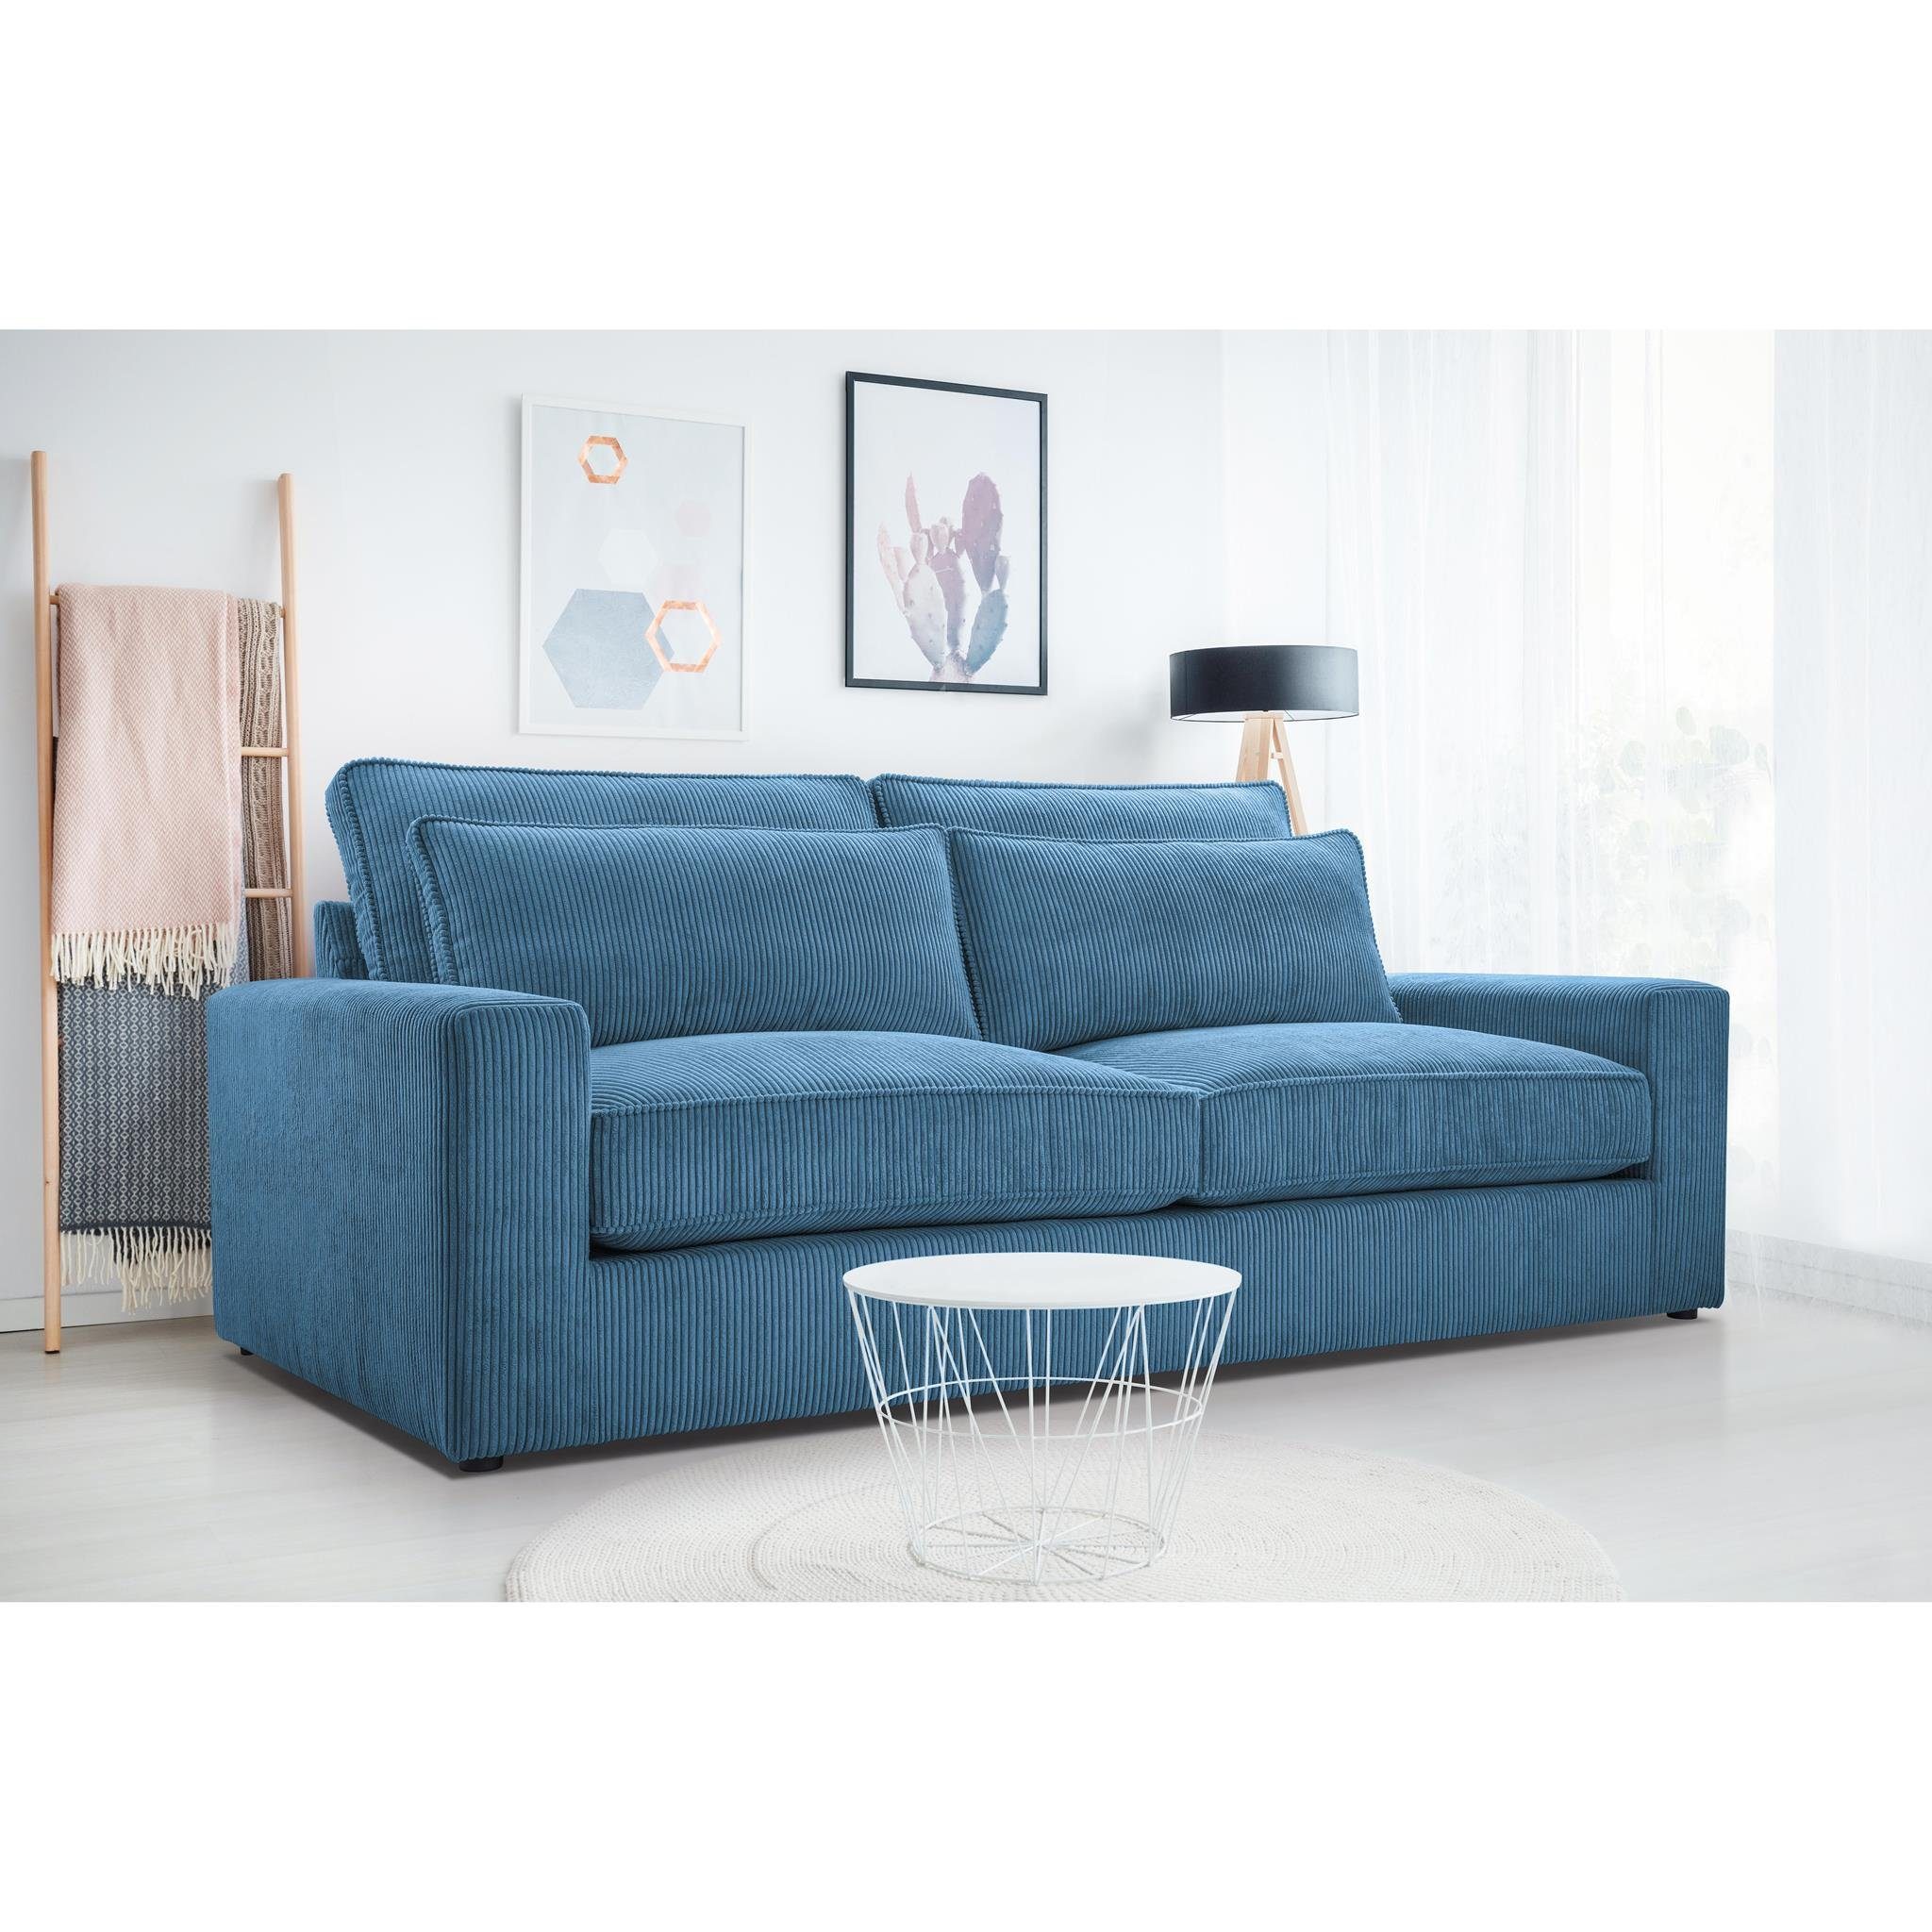 Beautysofa 3-Sitzer Como, Wellenfedern, Wohnzimmer, 221 cm Sofa im modernes Stil, Polstersofa aus Velours im Cord-Struktur Blau (lincoln 75)